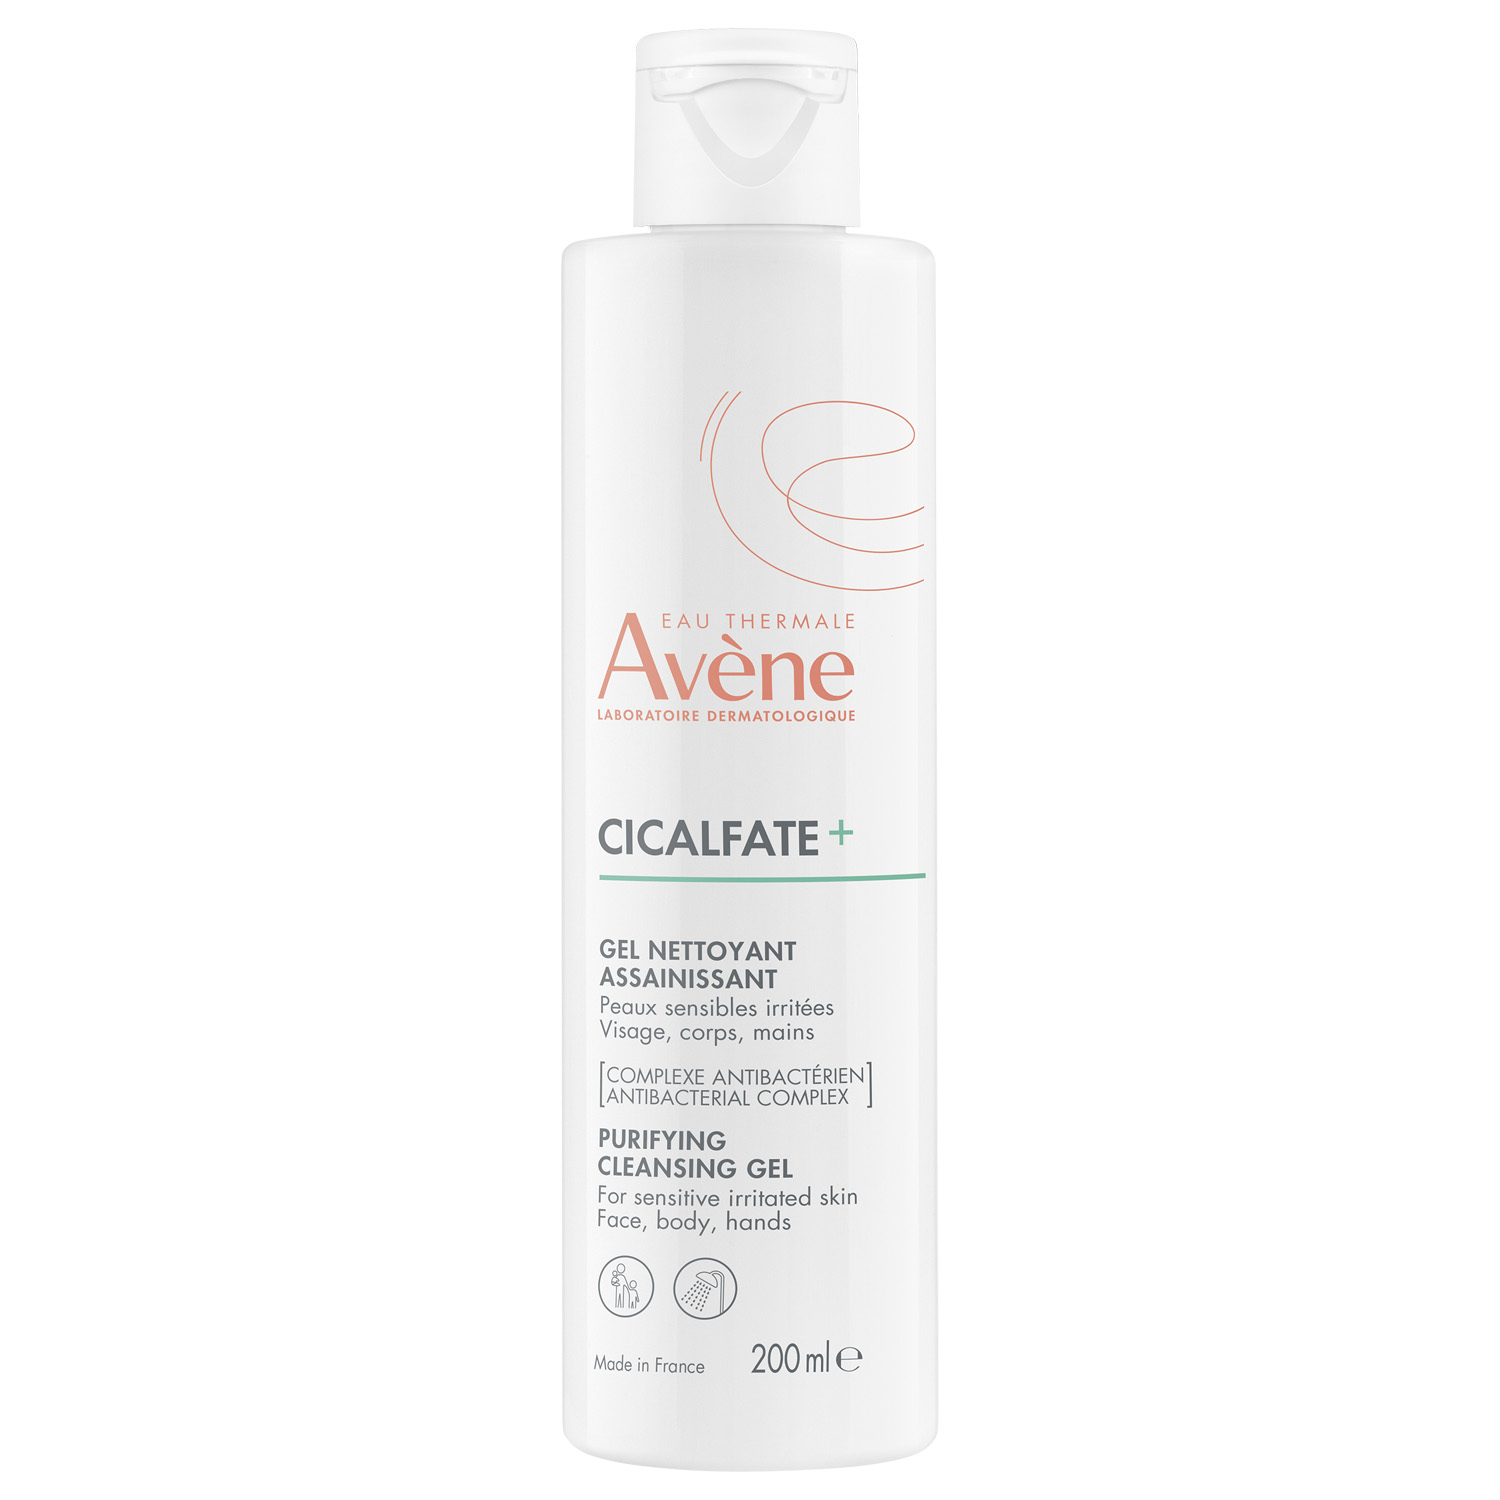 Купить Avene Очищающий гель для чувствительной и раздраженной кожи, 200 мл (Avene, Cicalfate), Франция